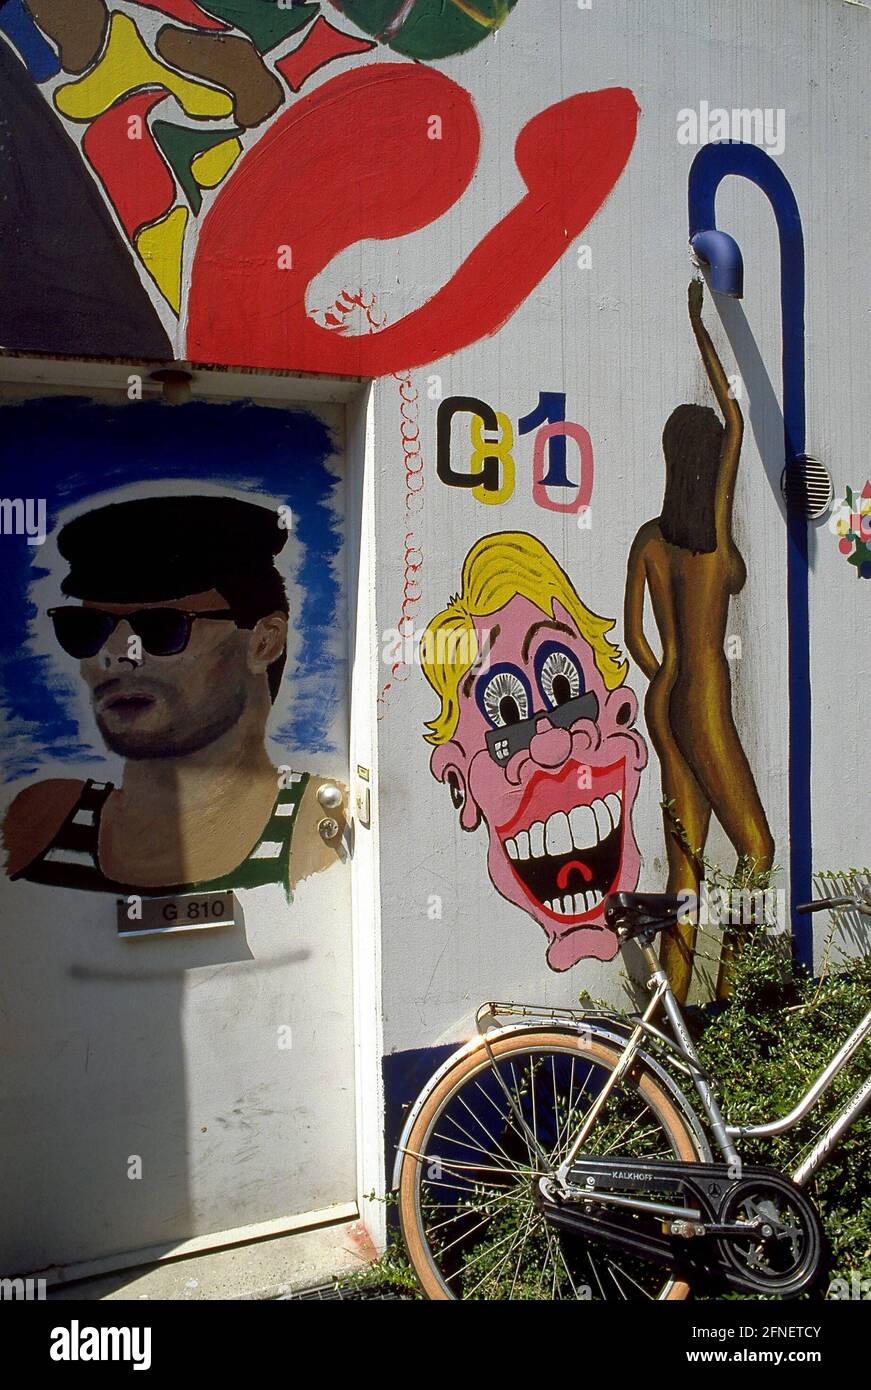 Dettaglio di un alloggio con pittura façade nella città studentesca del villaggio olimpico sui terreni olimpici di Monaco. [traduzione automatizzata] Foto Stock